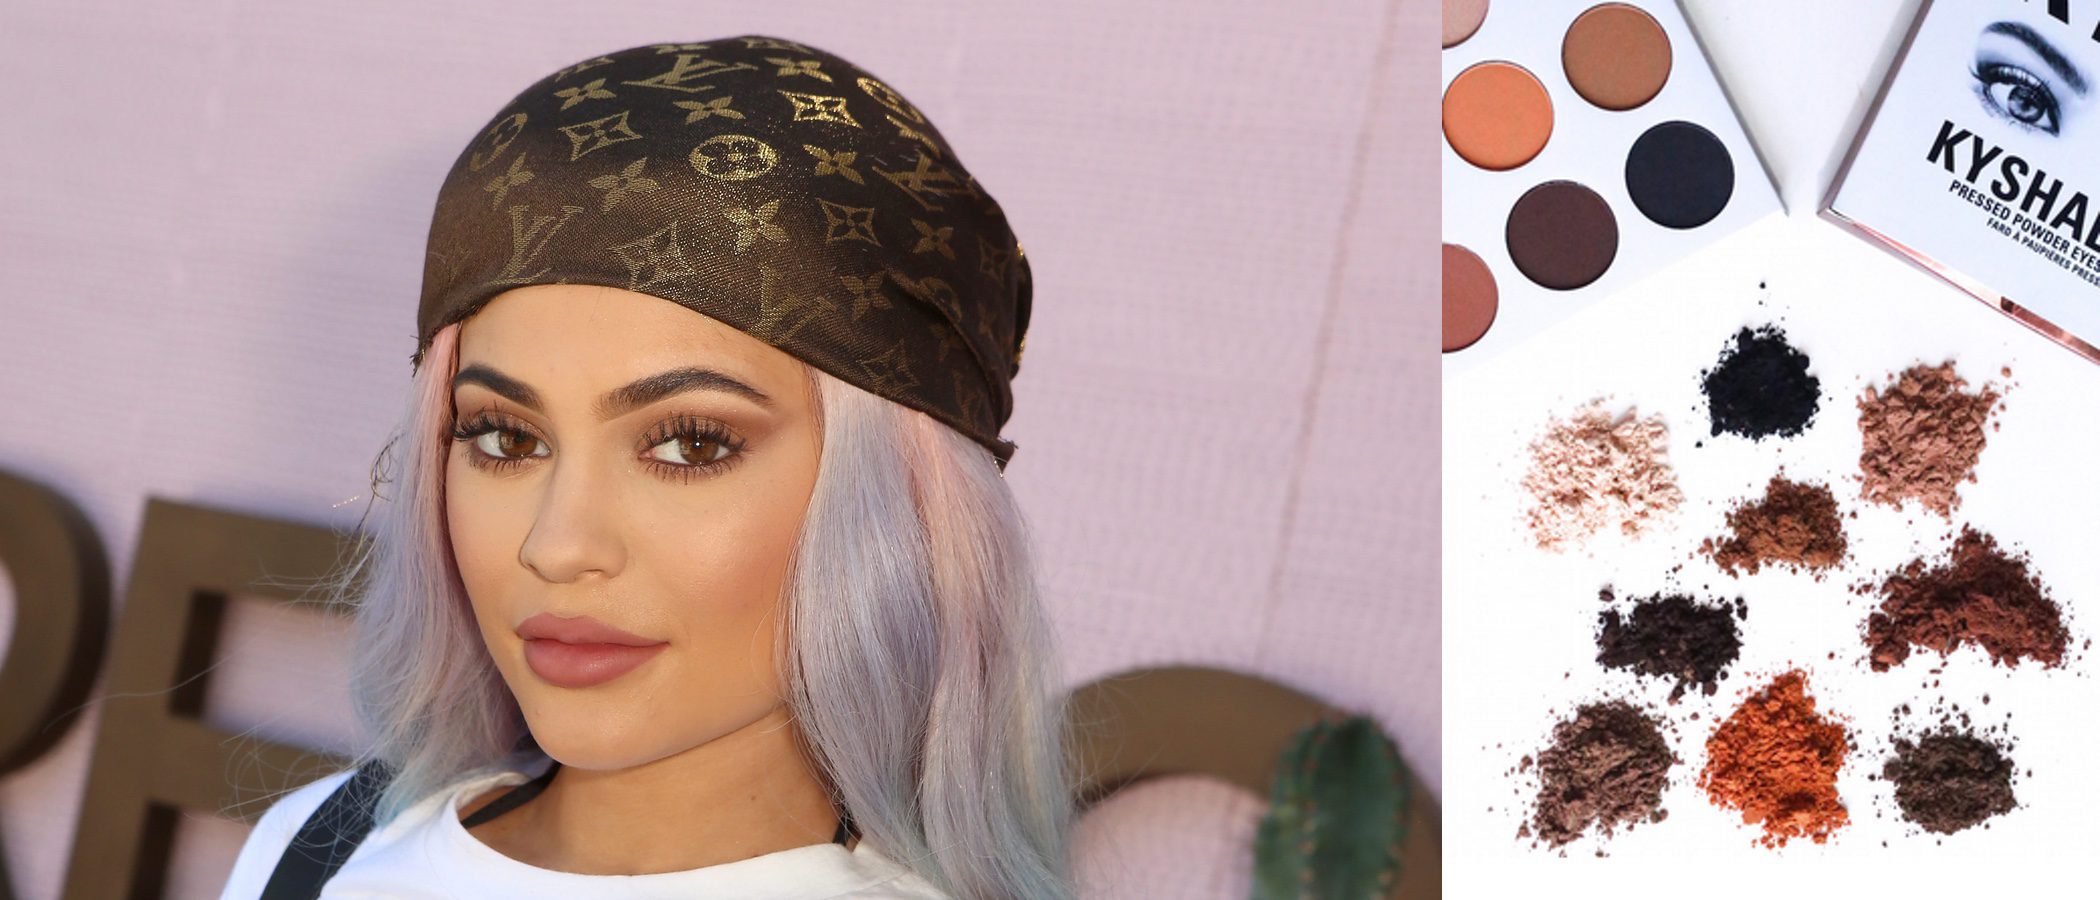 Kylie Jenner se lanza al mundo de las sombras de ojos con 'KyShadow'